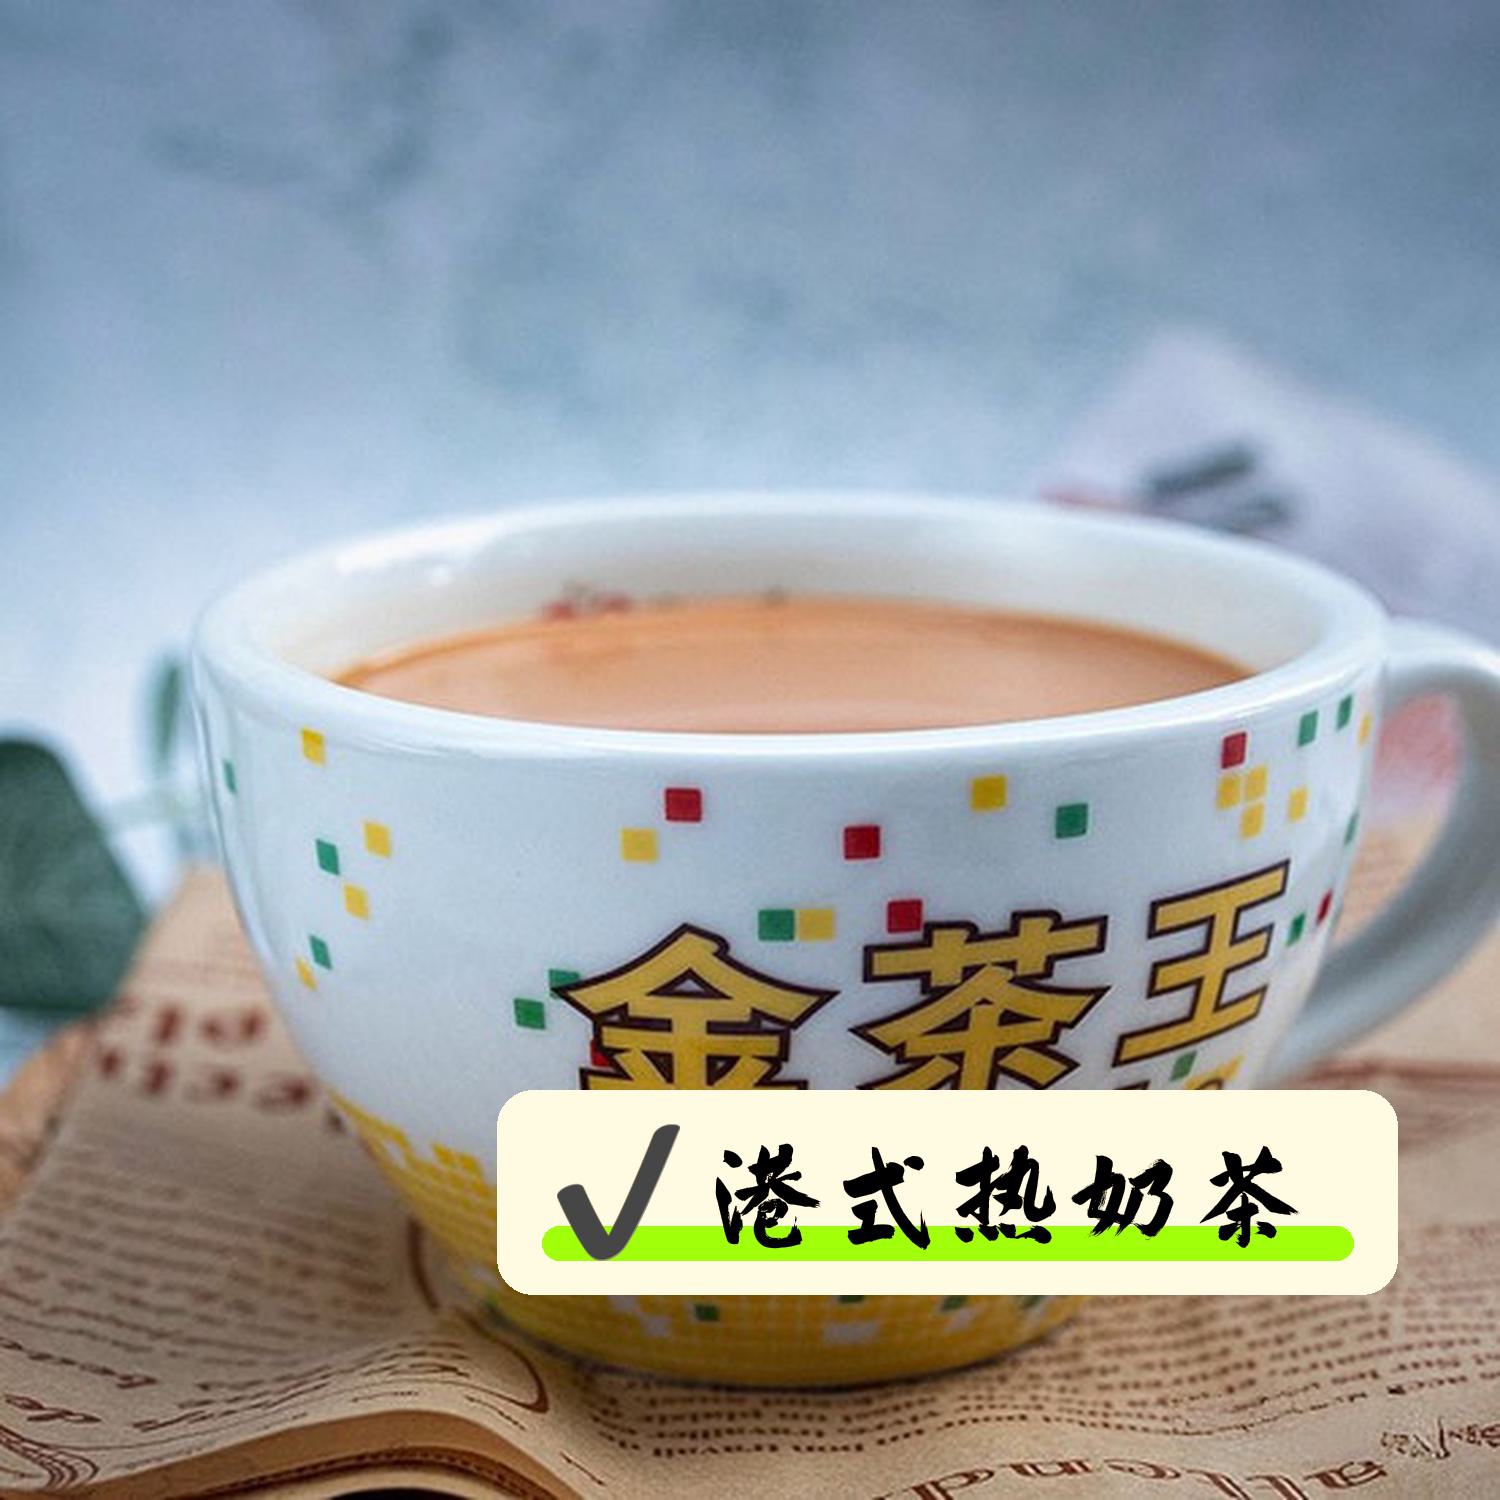 菜品 手打柠檬茶(15元:茶香,柠檬香,完美搭配 丝袜冻奶茶(12元)